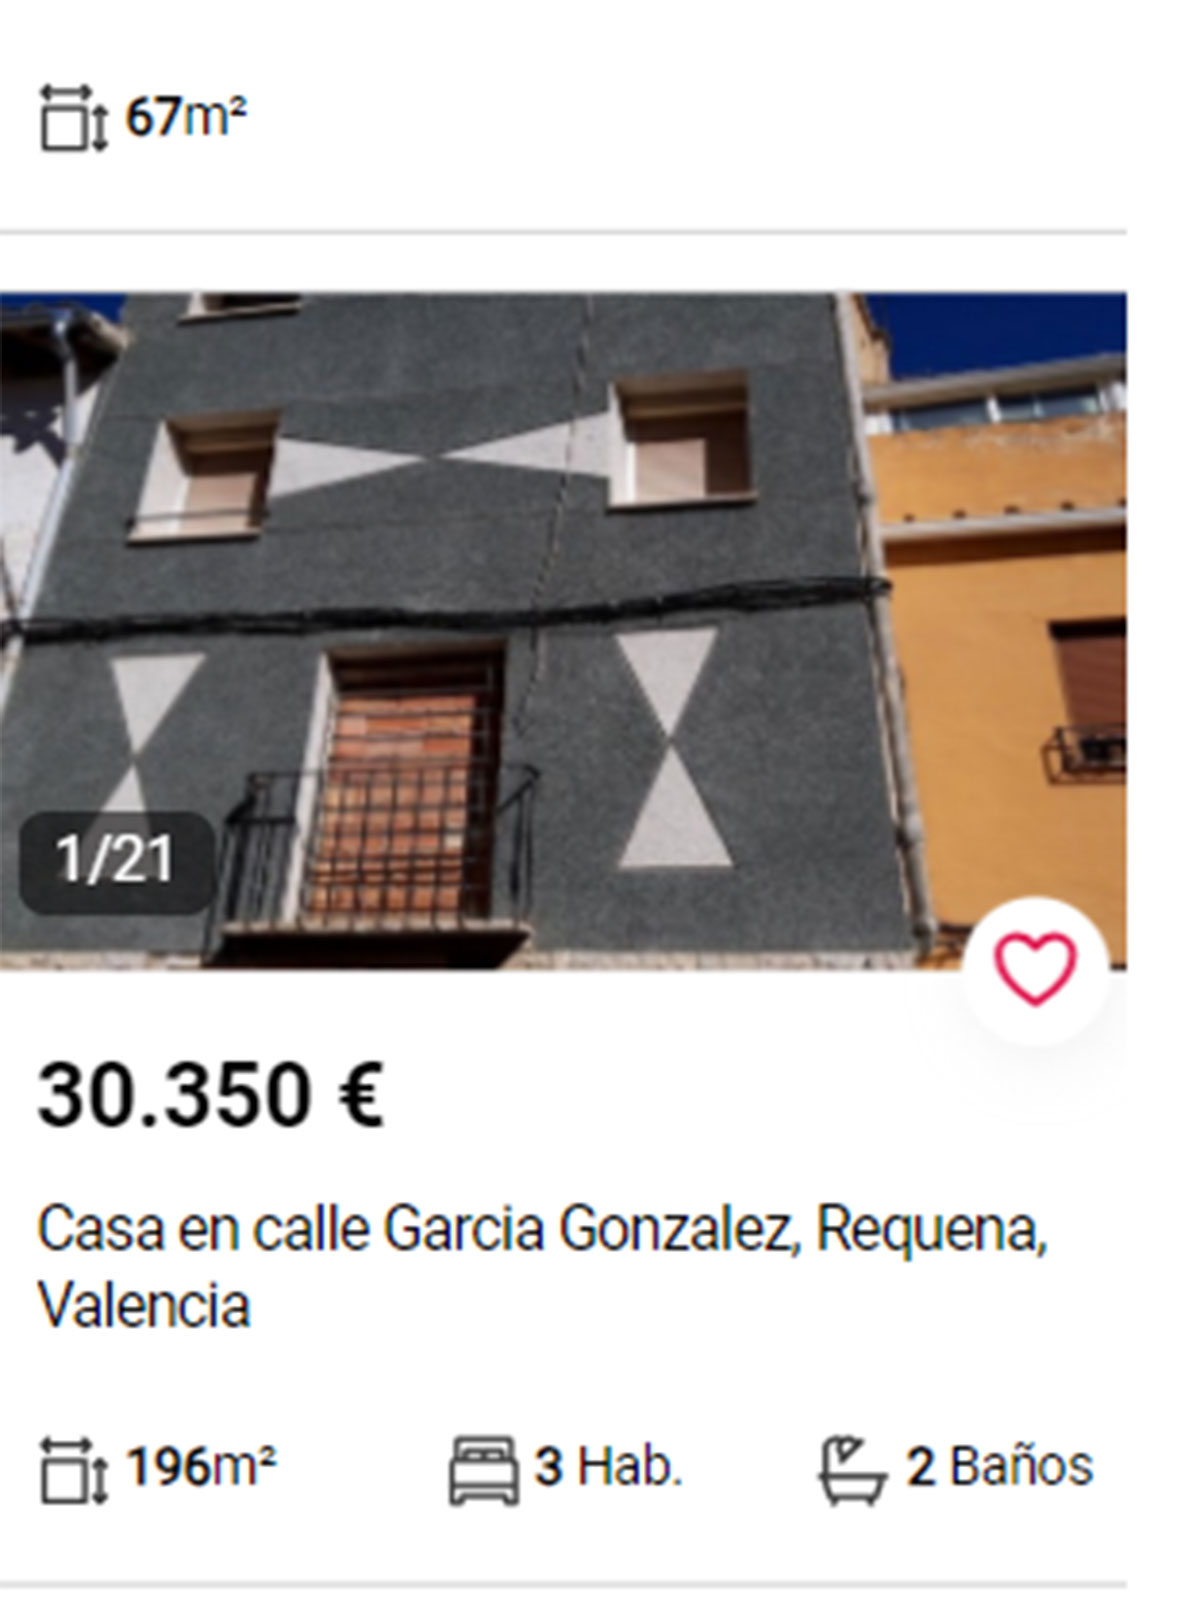 Piso en Valencia por 30.000 euros